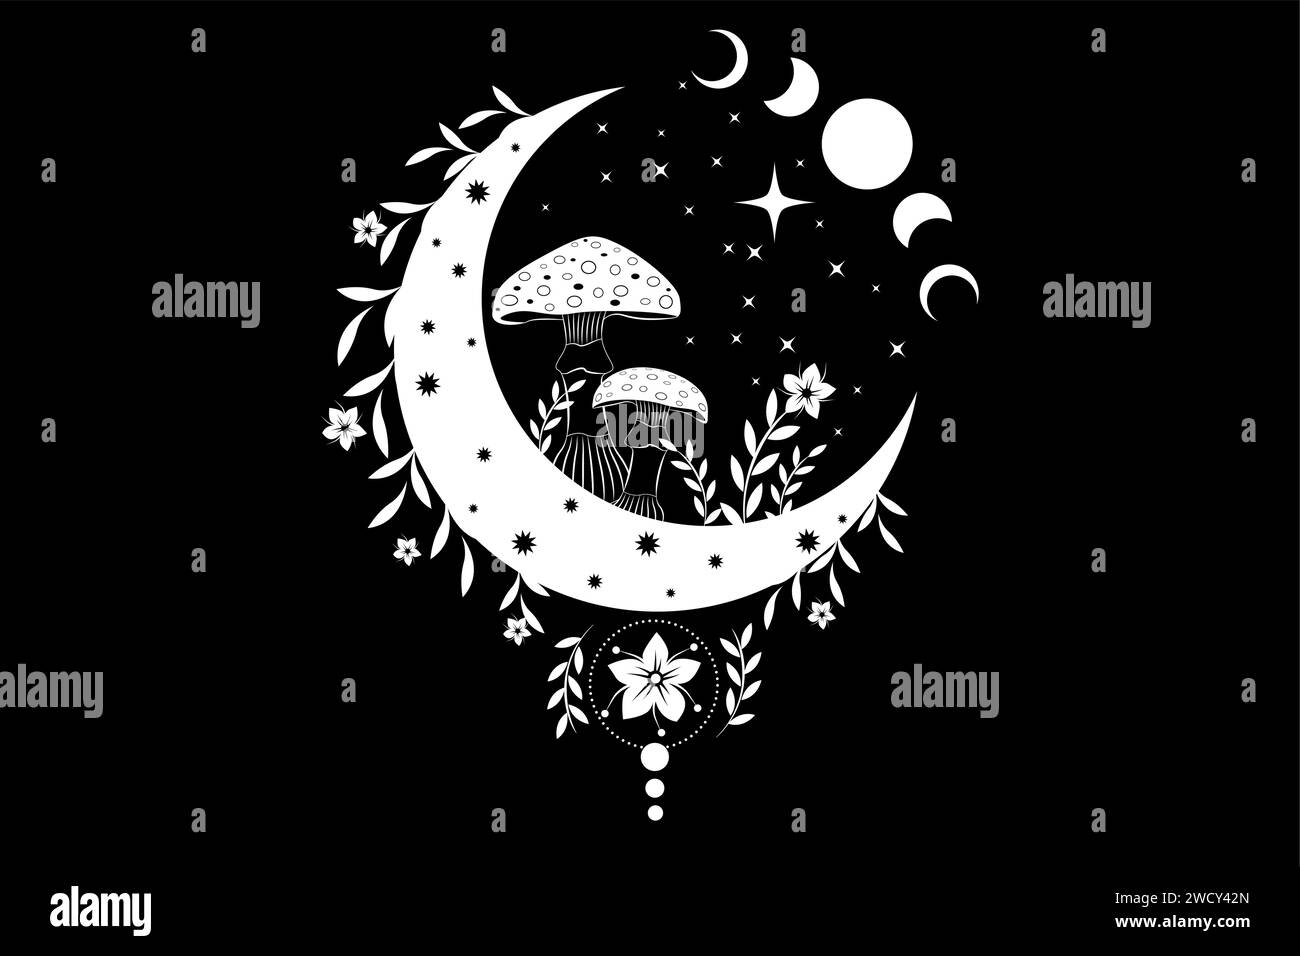 Funghi magici sulla mistica luna a mezzaluna in stile boho, Amanita Muscaria celeste e fase lunare, simbolo della stregoneria, logo bianco esoterico stregoneria Illustrazione Vettoriale